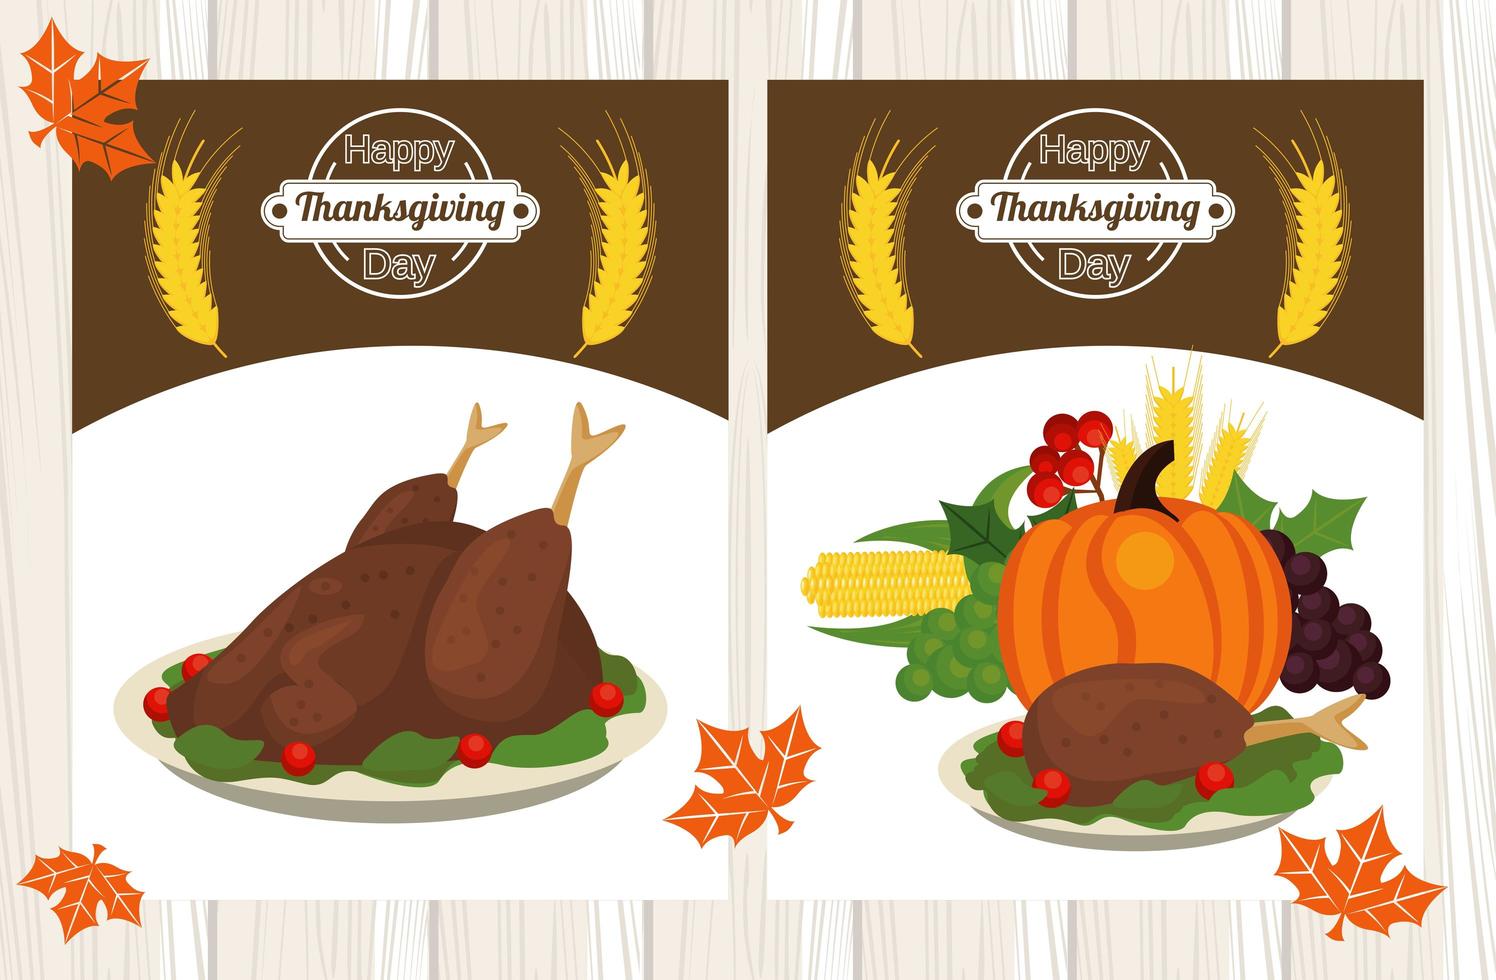 happy thanksgiving day poster met kalkoenen eten en fruit vector